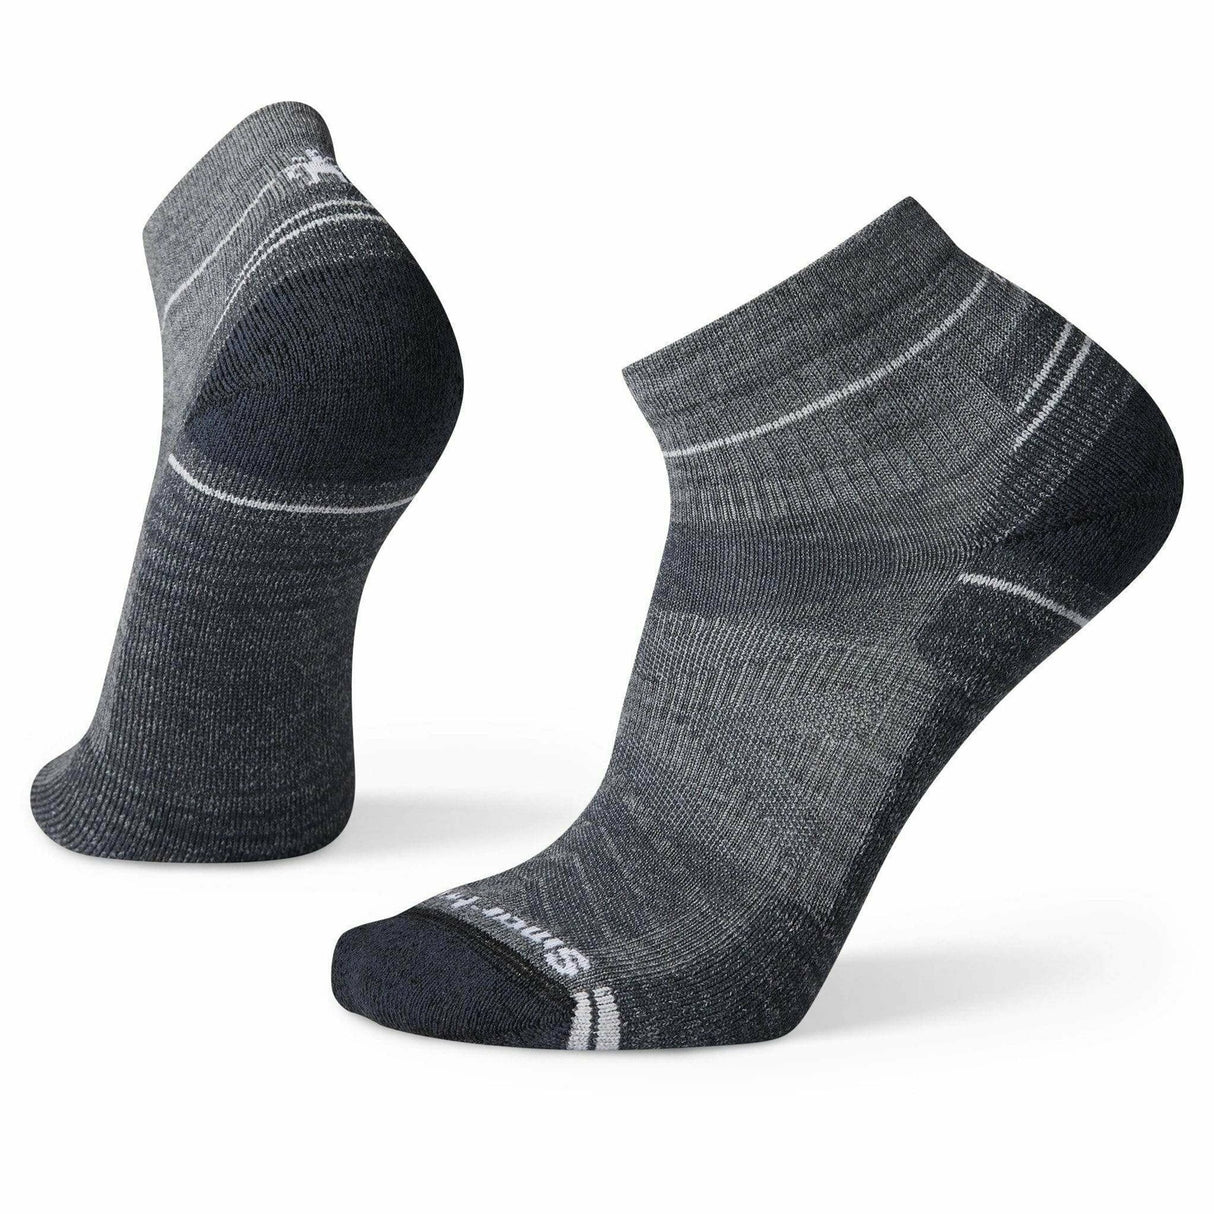 Smartwool Hike Light Cushion Ankle Socks  -  Medium / Medium Gray